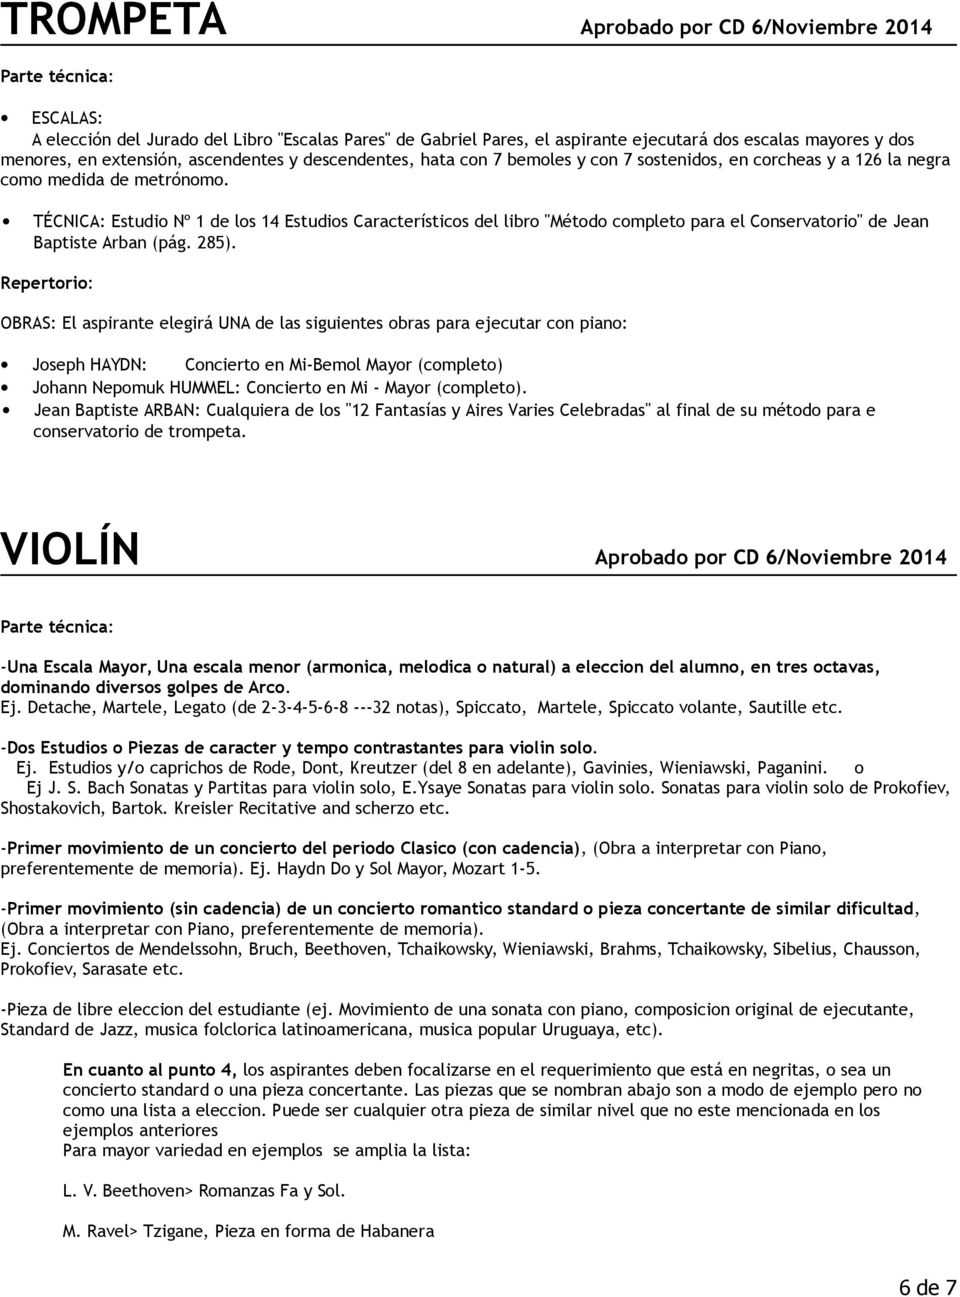 TÉCNICA: Estudio Nº 1 de los 14 Estudios Característicos del libro "Método completo para el Conservatorio" de Jean Baptiste Arban (pág. 285).